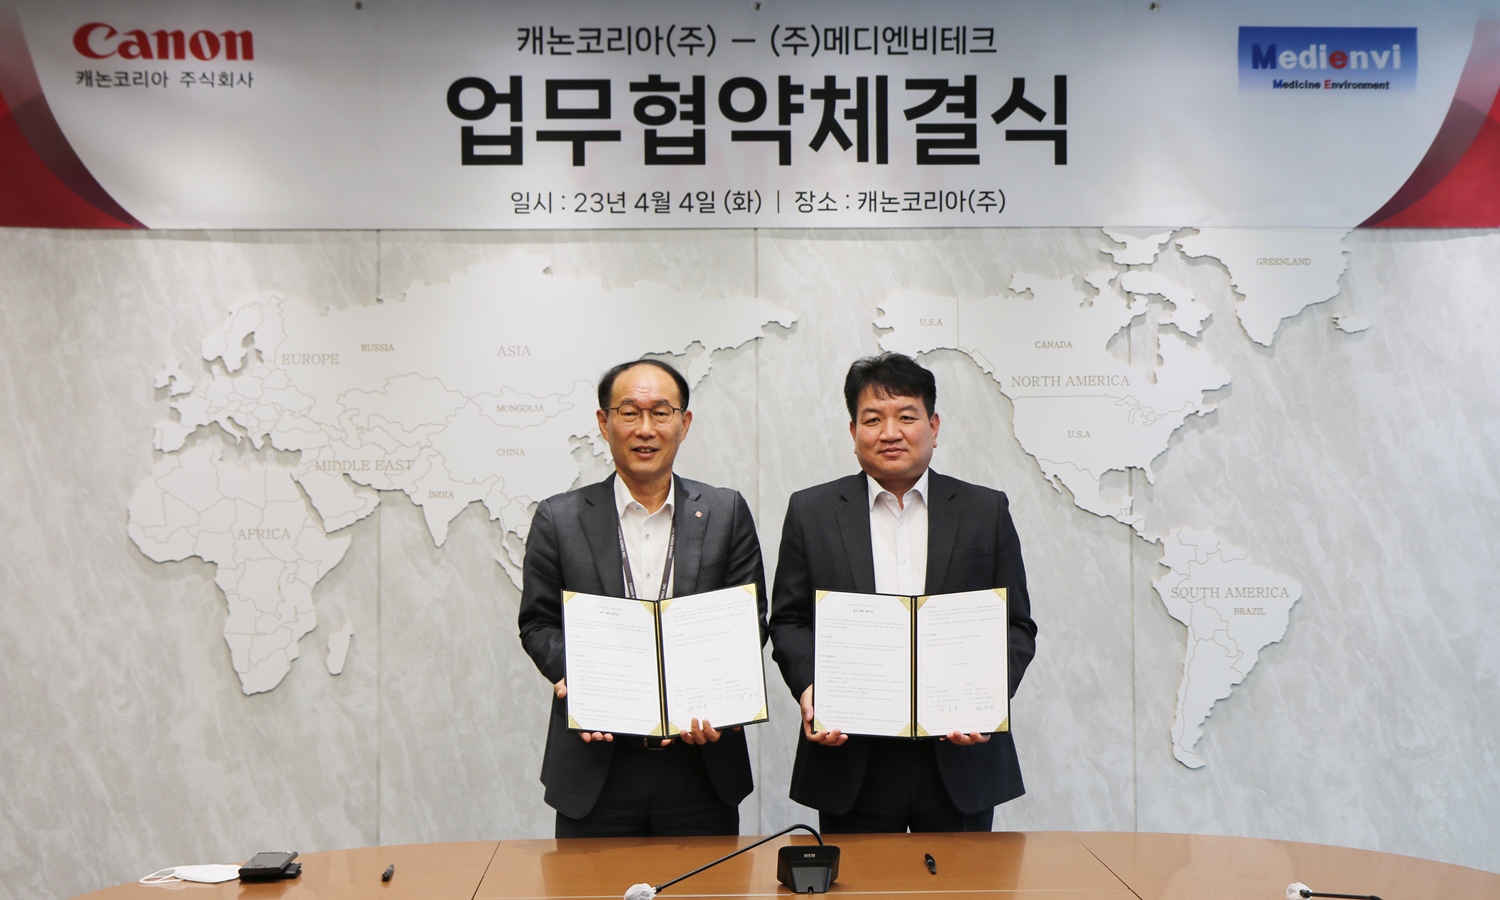 (좌로부터) 박정우 캐논코리아 대표이사, 김남두 메디엔비테크 대표이사